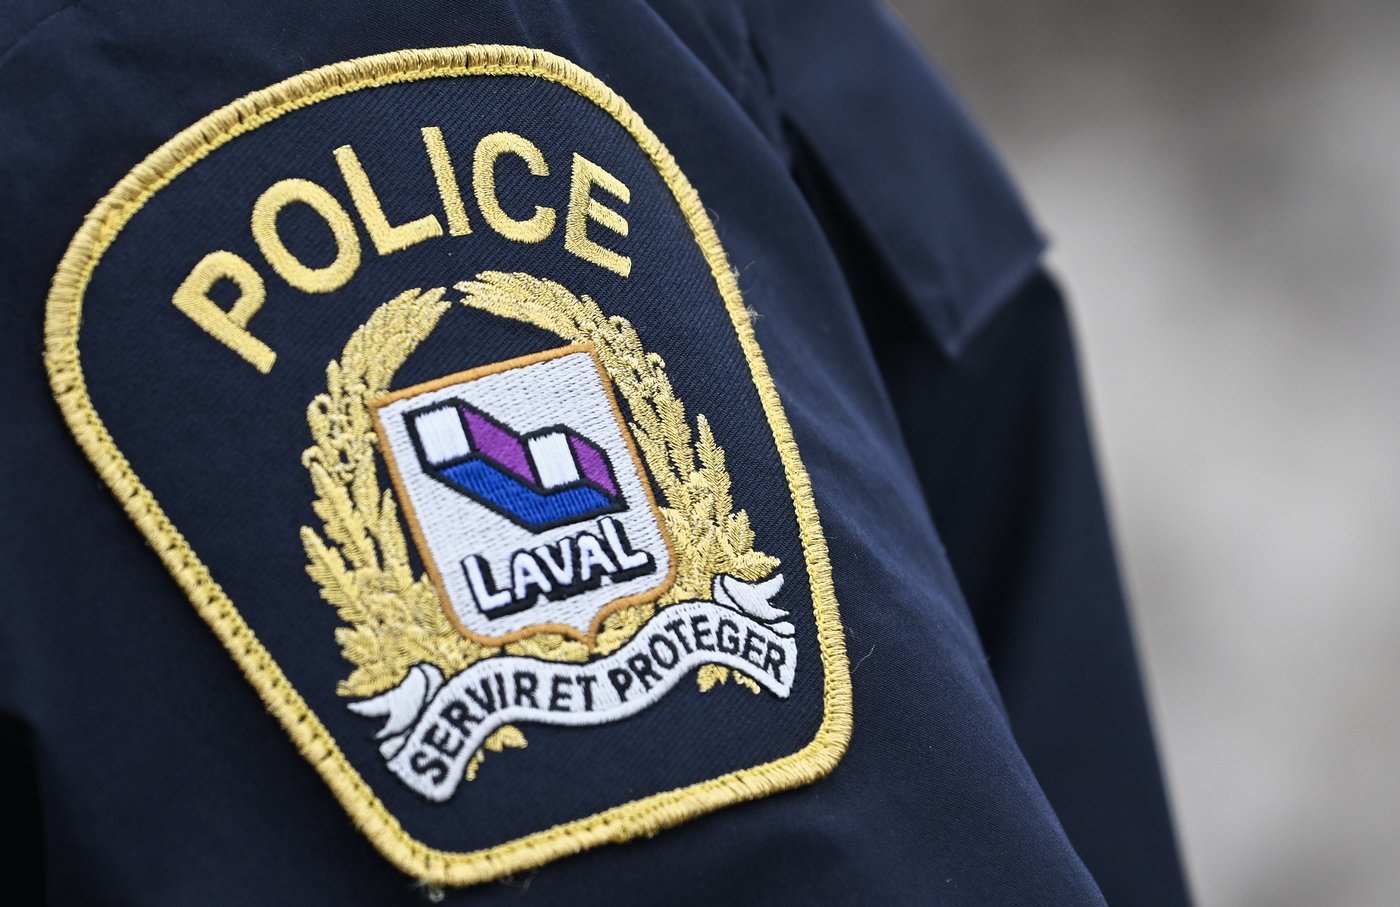 Une collision survenue vendredi à Laval a fait trois morts